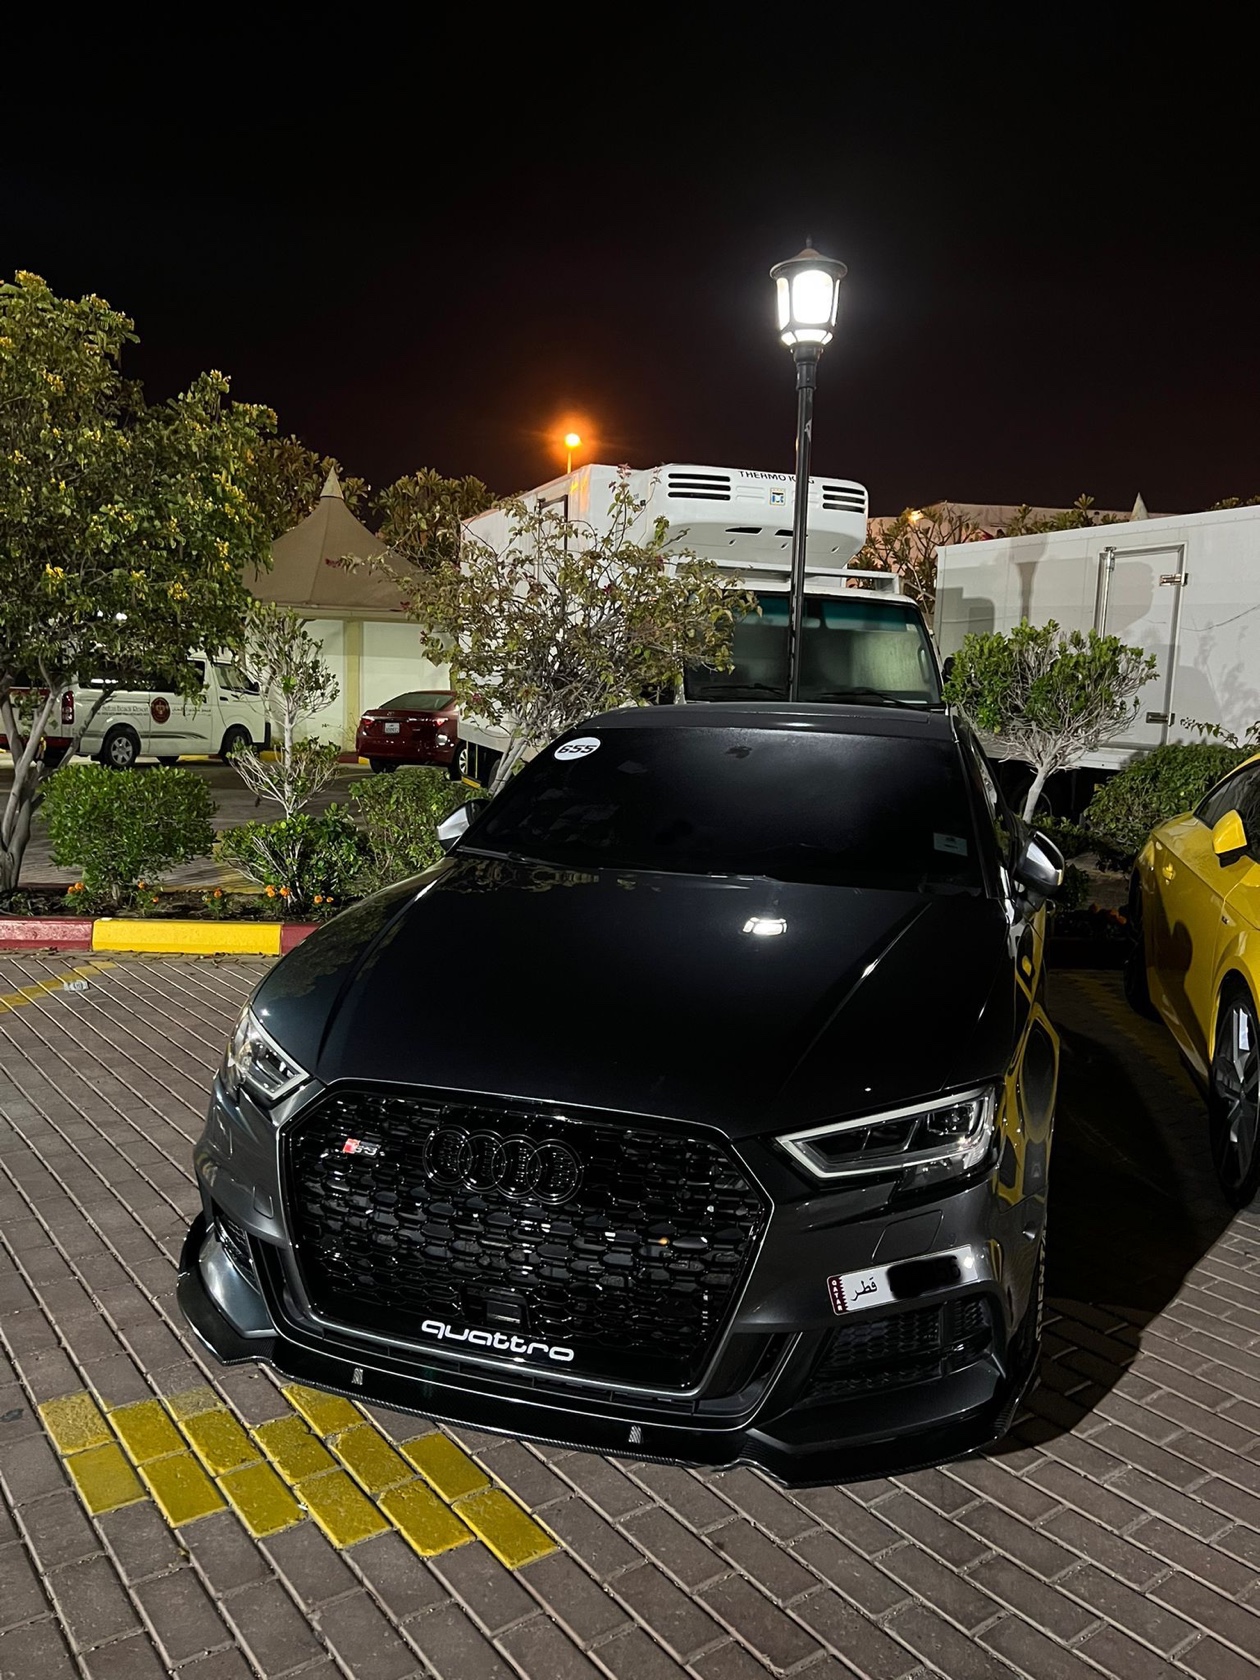 سيارة أودي S3 موديل 2017 للبيع فى الدوحة قطر